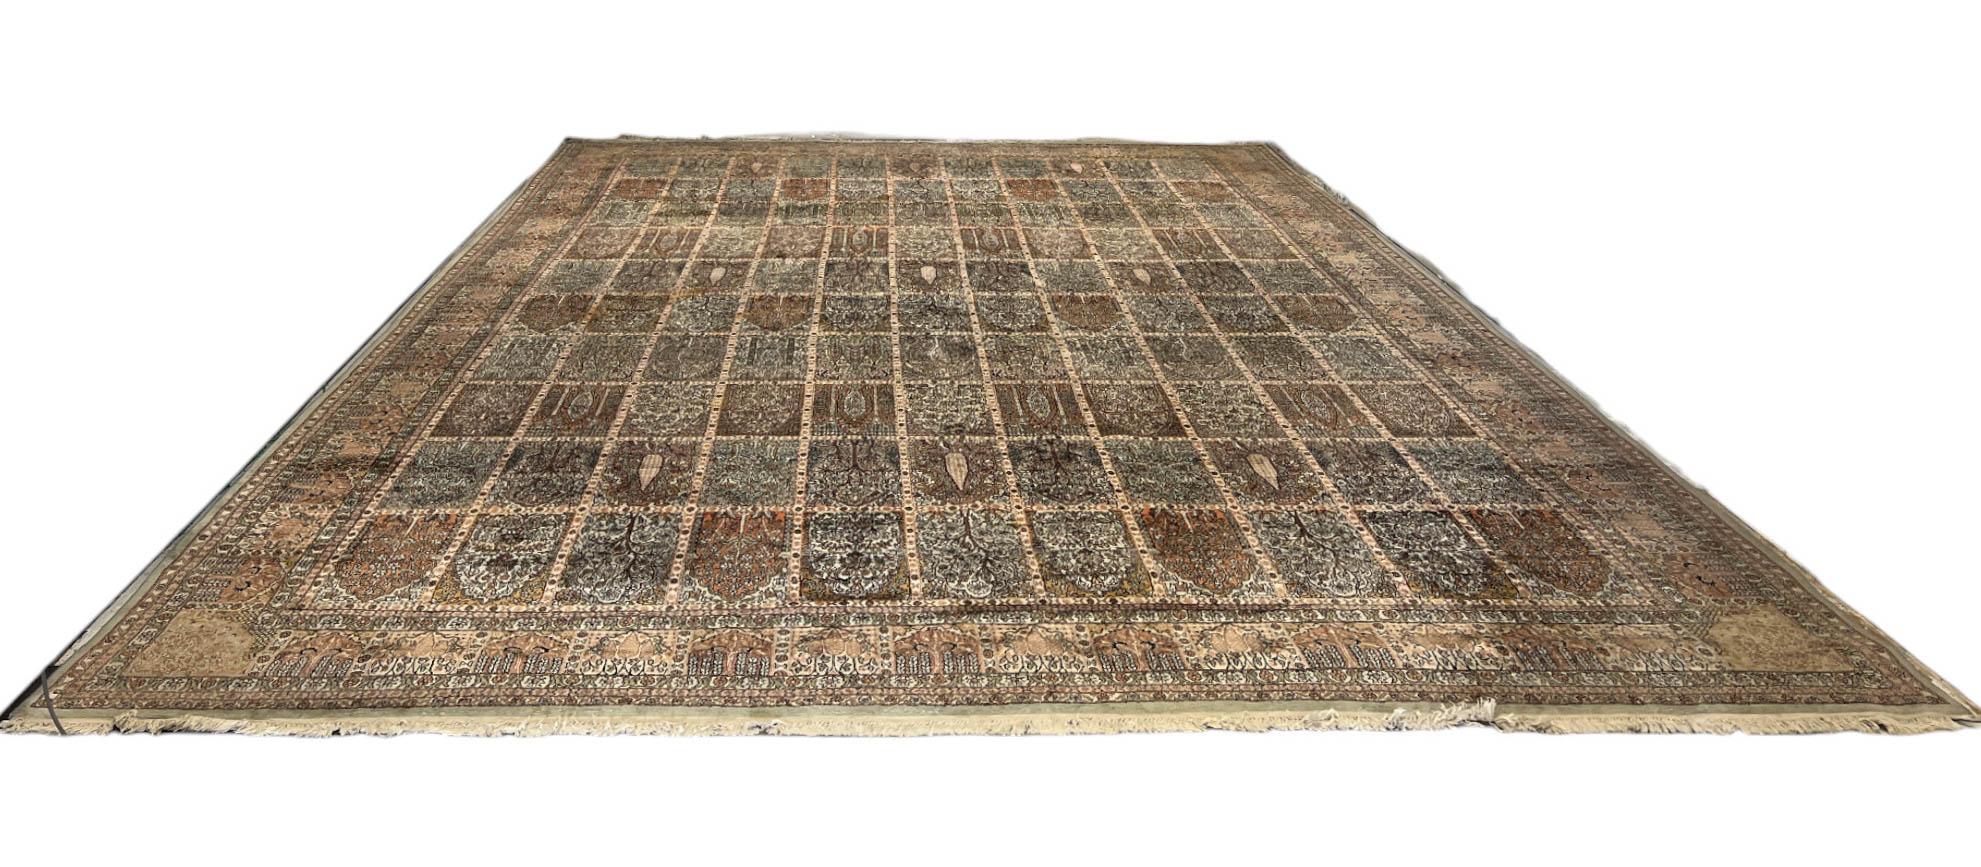 Der Teppich ist aus Kaschmirseide handgeknüpft und zeigt eine außergewöhnliche Handwerkskunst, die das reiche Erbe der Teppichherstellung in der Region Kaschmir widerspiegelt.  Aufgrund des Glanzes der Seidenfäden weist der Teppich je nach